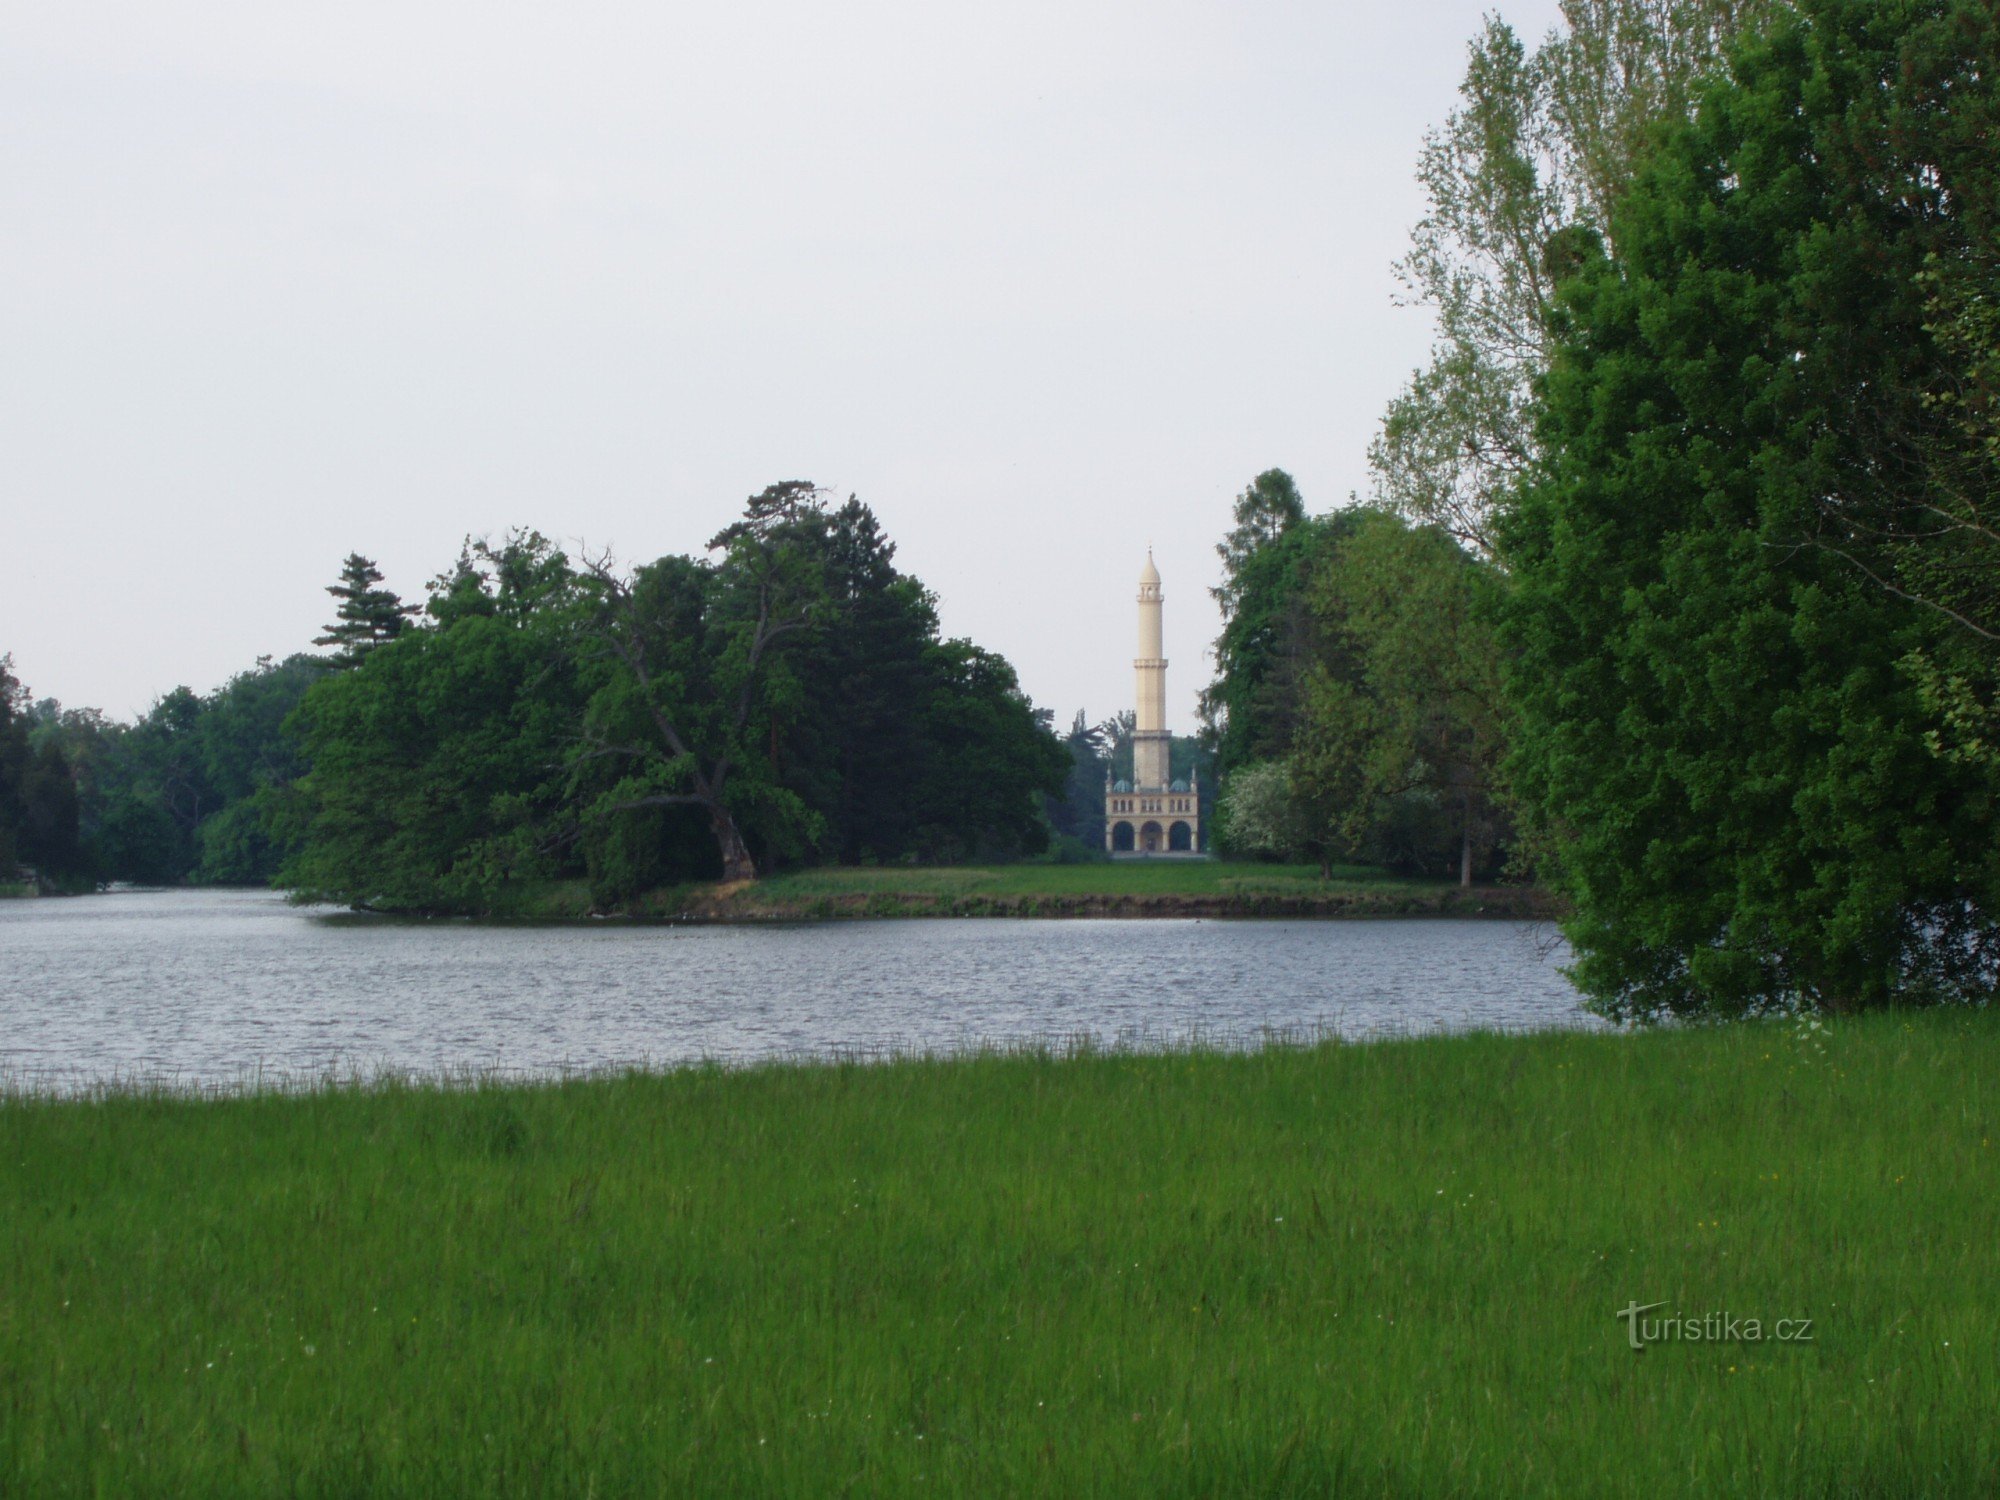 Minaret in the castle park in Lednice